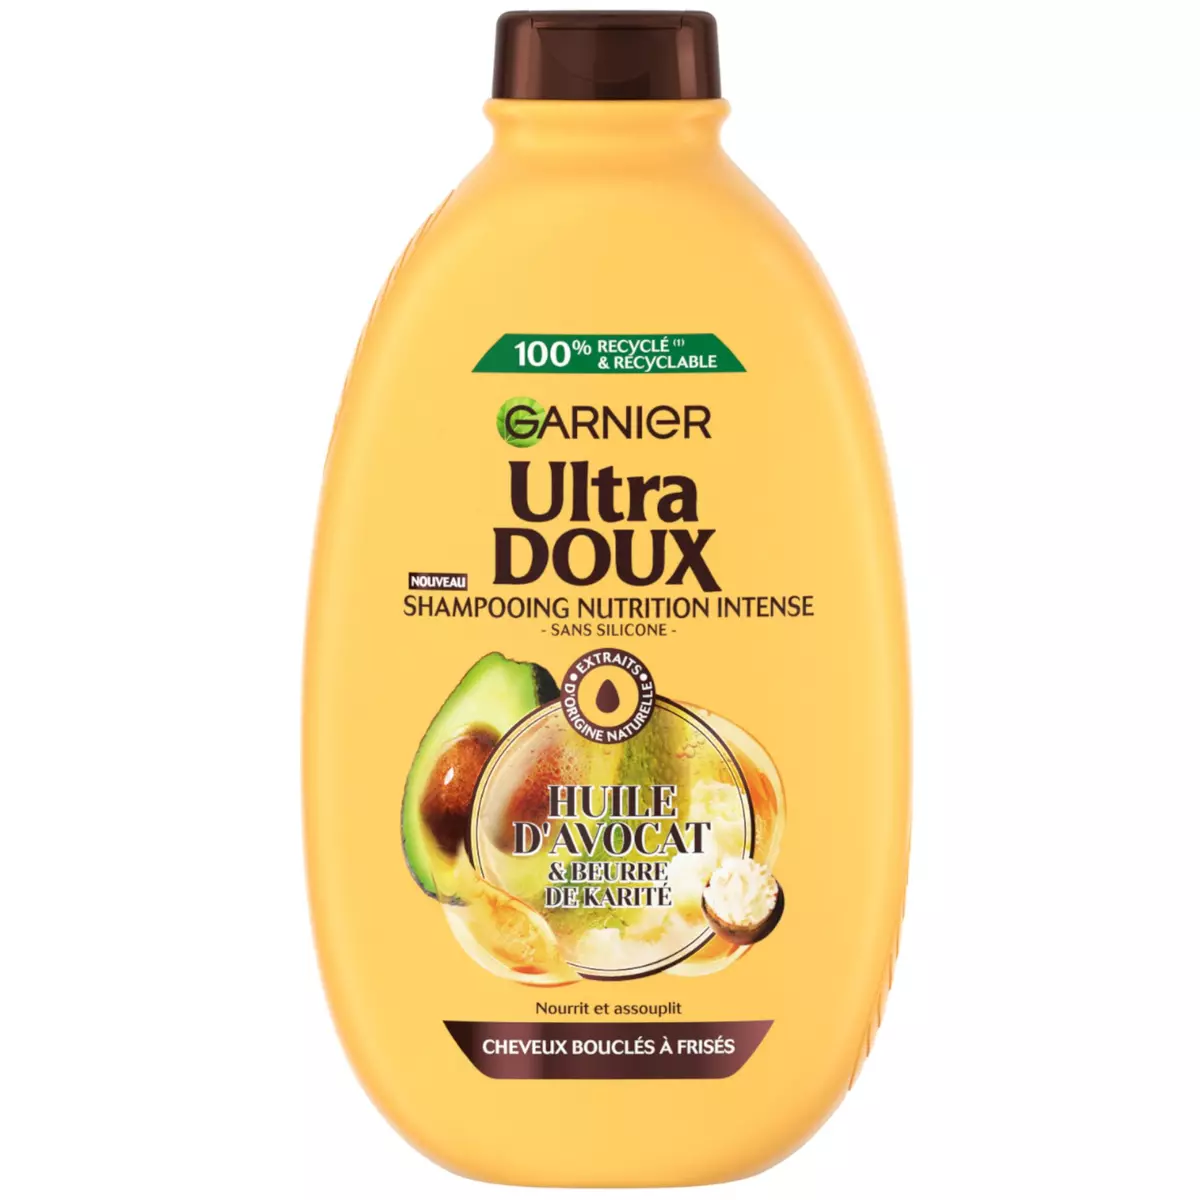 GARNIER ULTRA DOUX Shampoing nutrition intense à l'huile d'avocat et beurre de karité pour cheveux très secs ou frisés 400ml